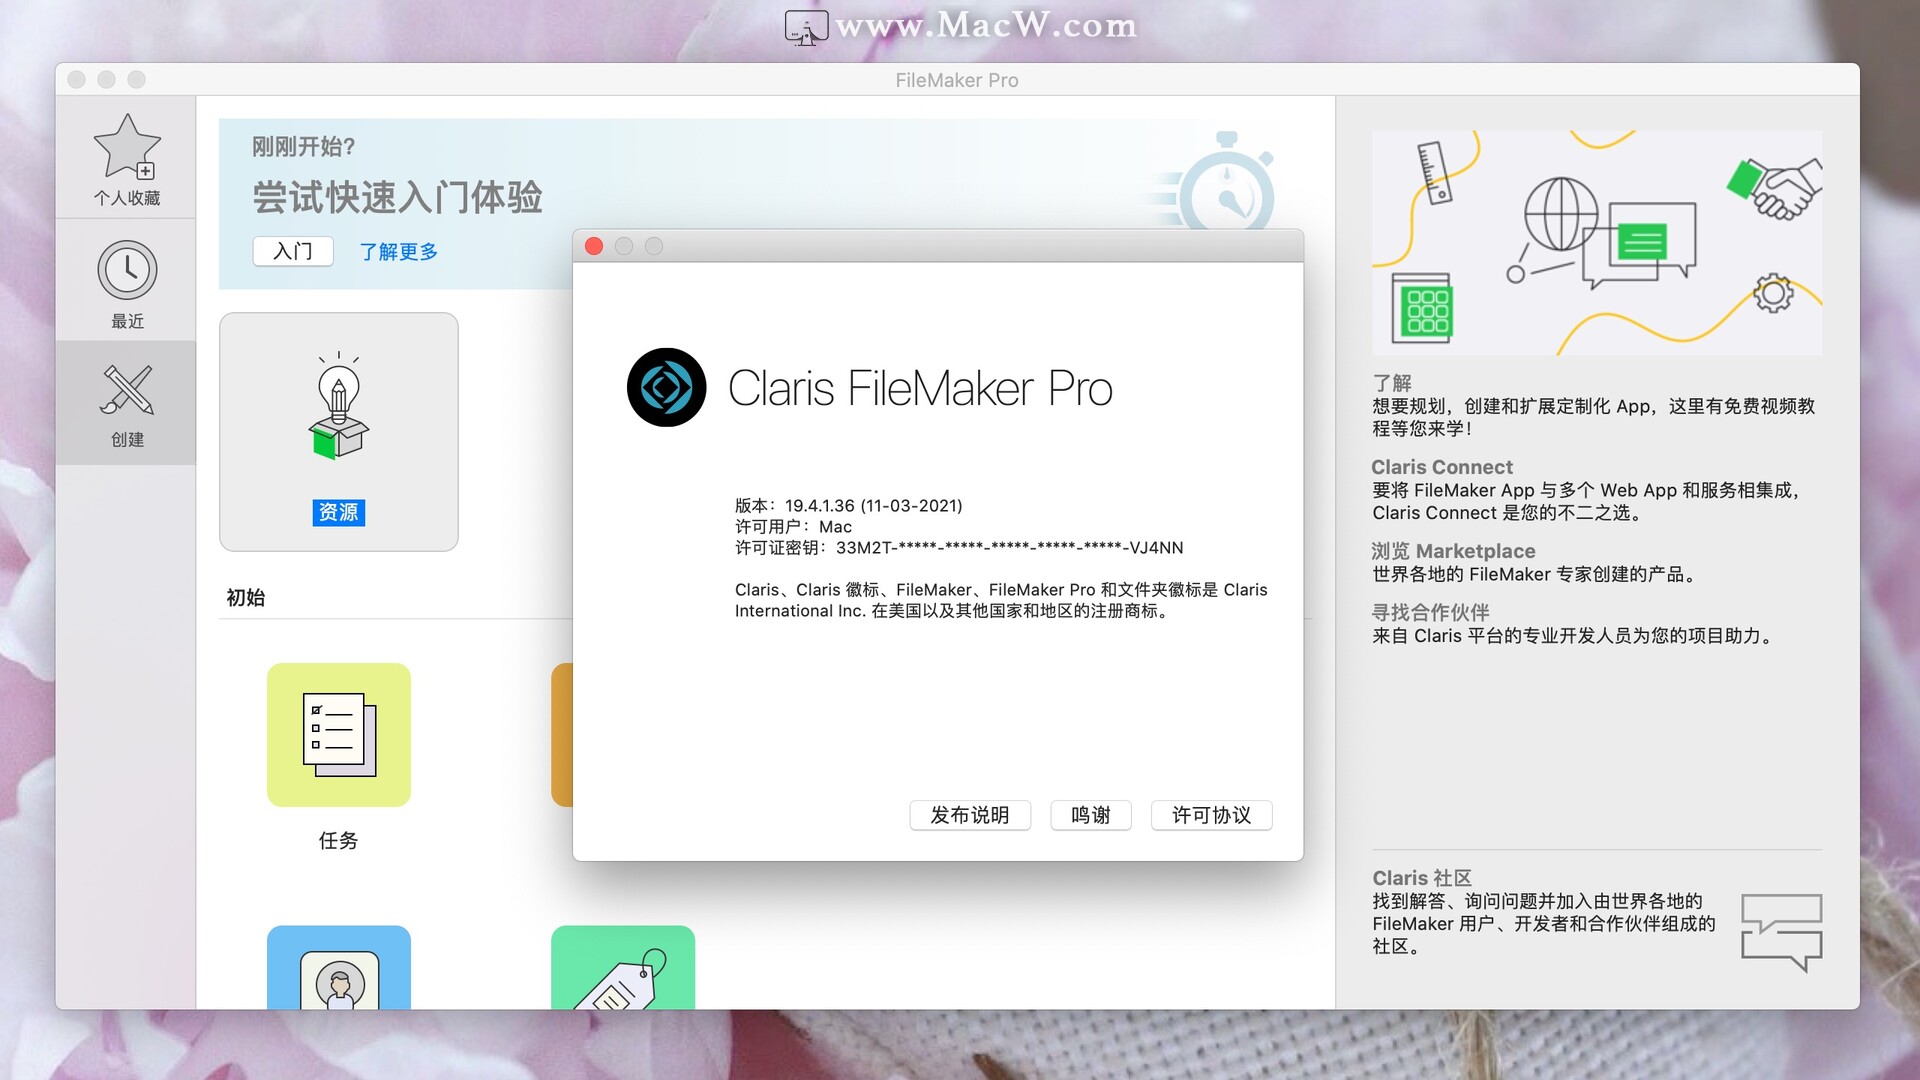 FileMaker Pro 19 for mac (定制化App开发神器)v19.4.1永久激活版 - 图1